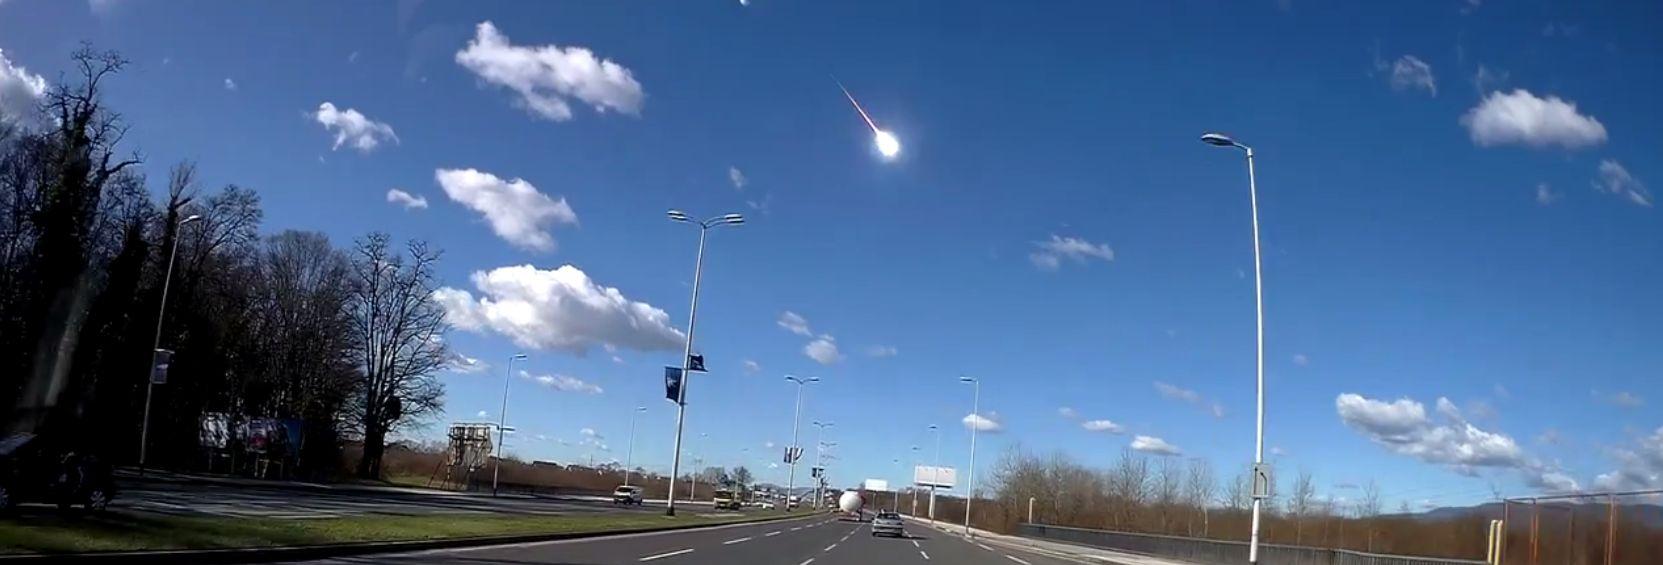 Meteorite Fano, l'avvistamento. "Una scia di fuoco in cielo". Video